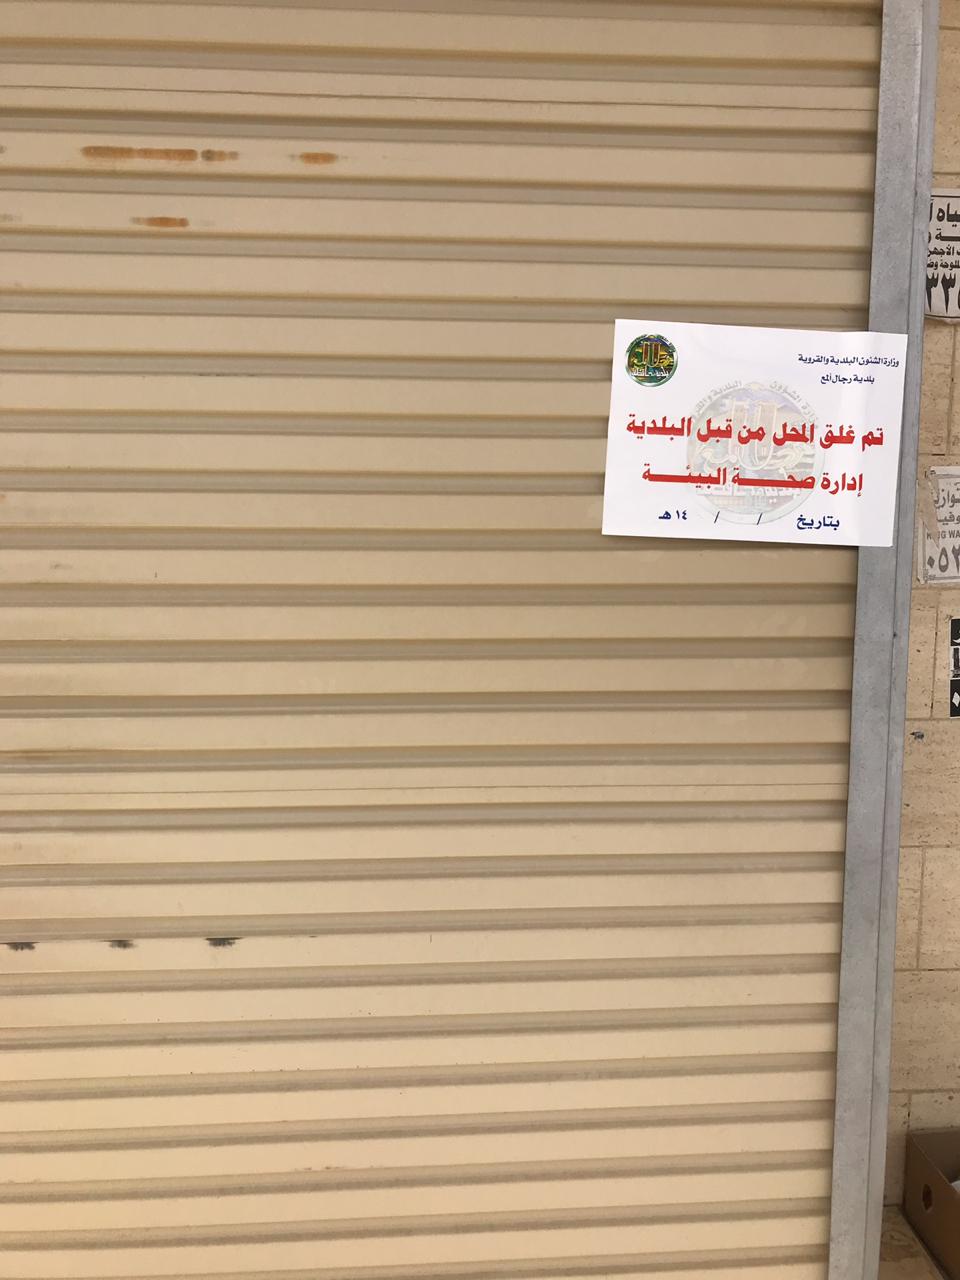 بلدية رجال ألمع تخالف وتغلق عددًا من المحلات والمطاعم